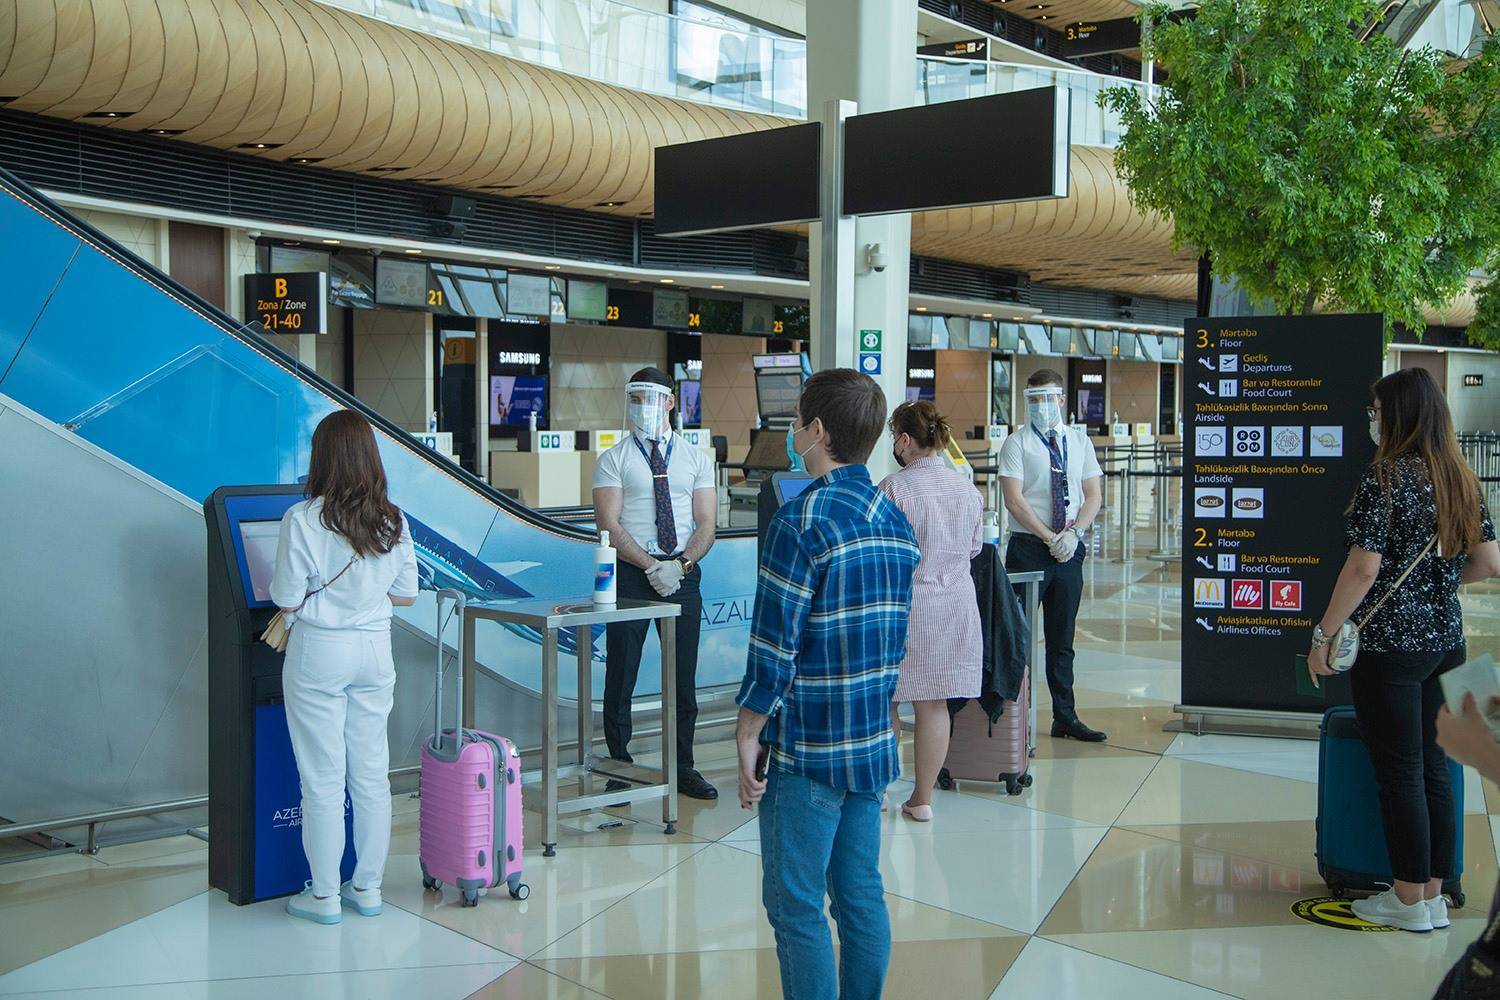 Регистрация на рейс азал (азербайджанские авиалинии) онлайн и оффлайн, правила прохождения процедуры и дальнейшие действия